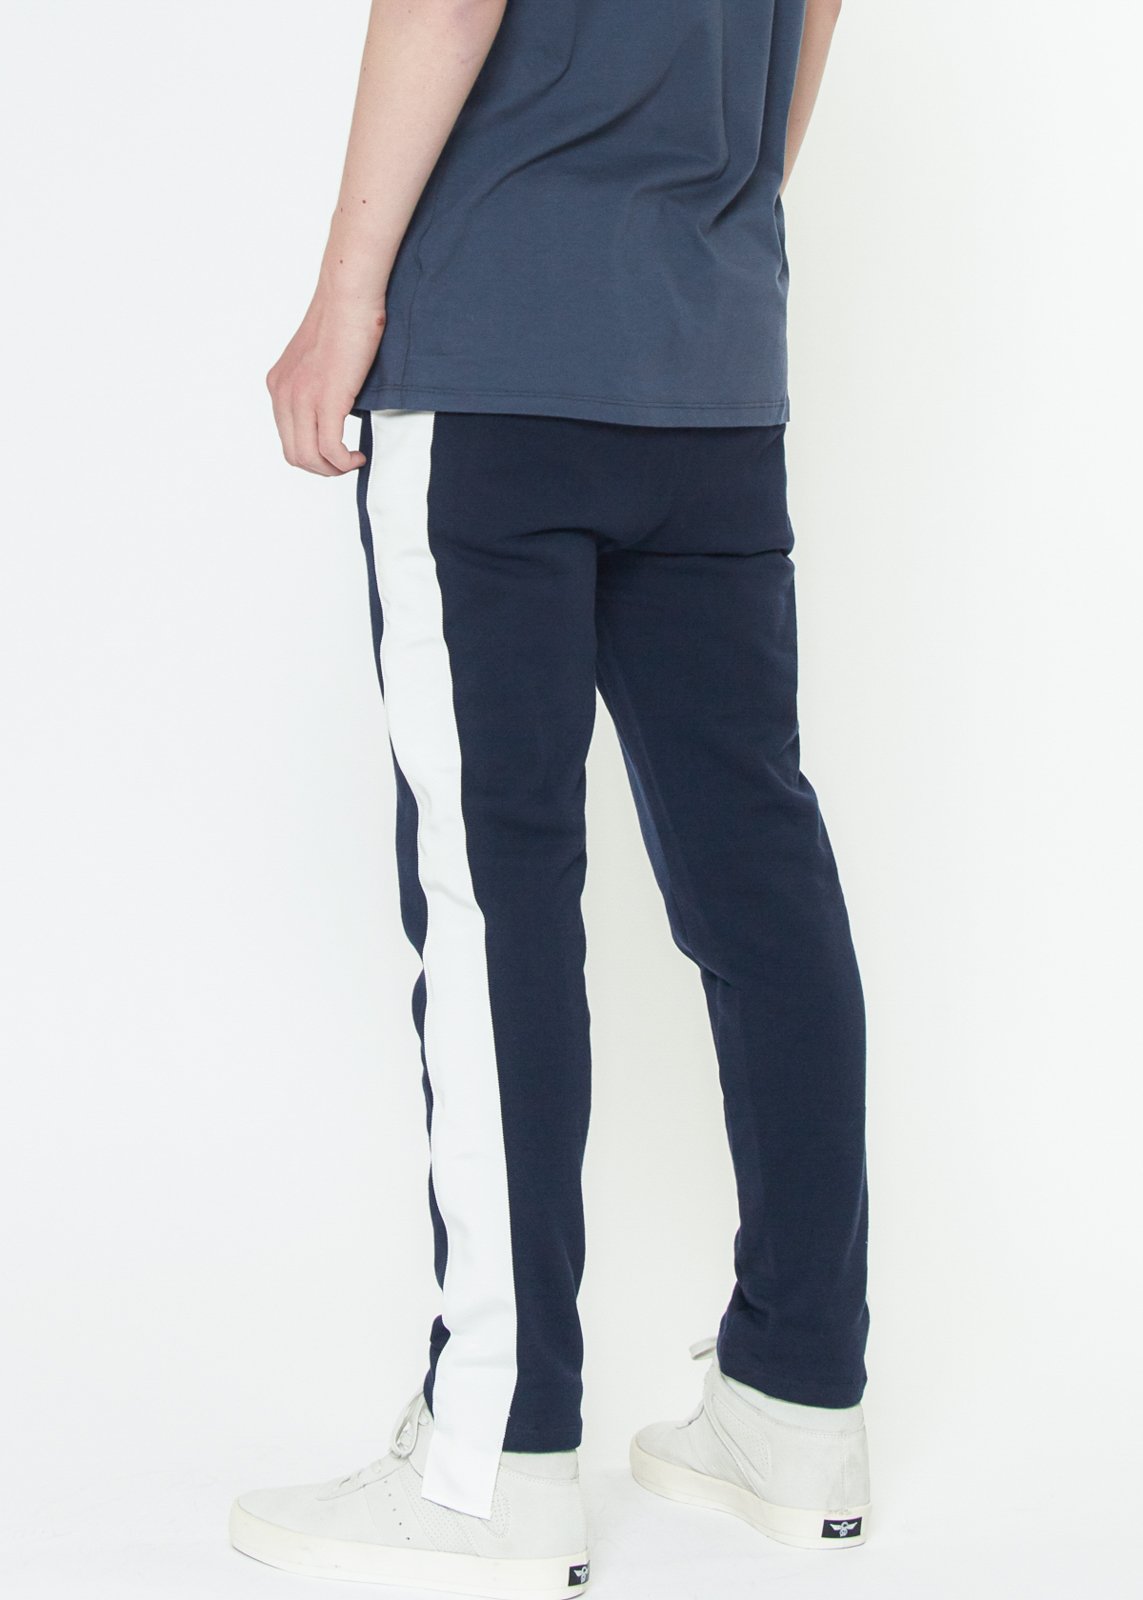 Konus Men's Sweatpants w/ Side Stripes in Navy - LuxeSavo